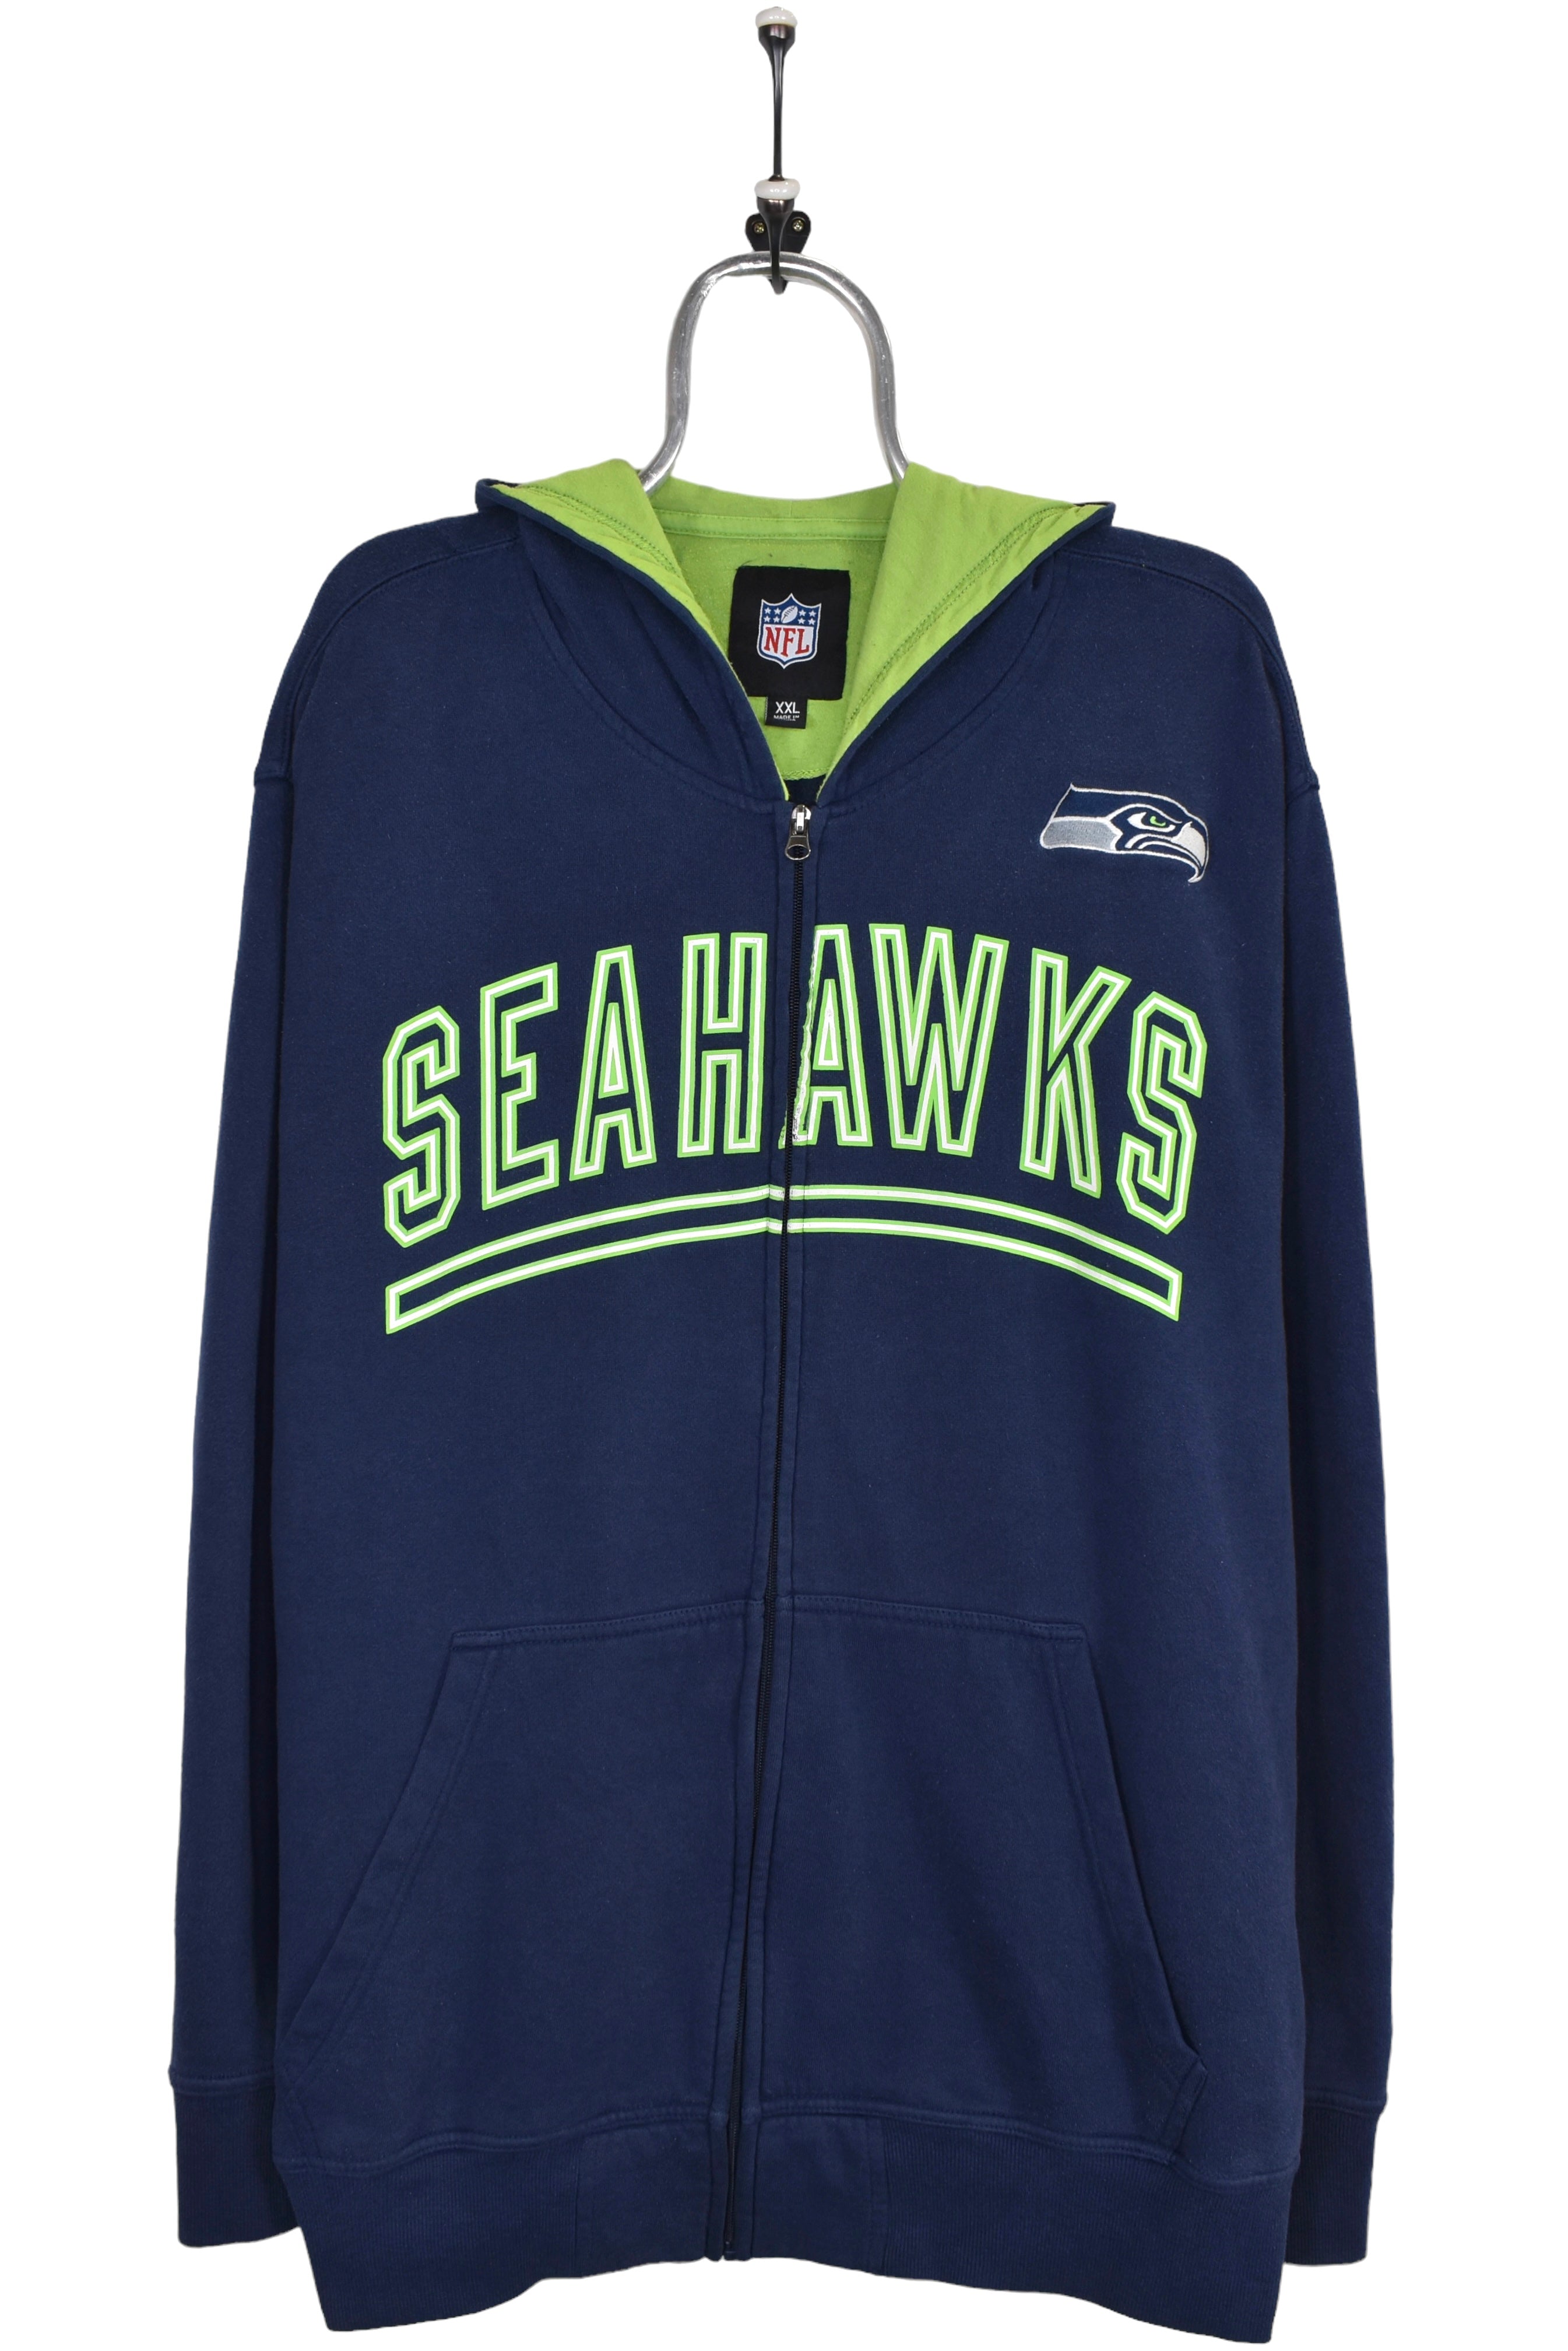 Vintage Seattle Seahawks hoodie, navy NFL graphic sweatshirt - XXL